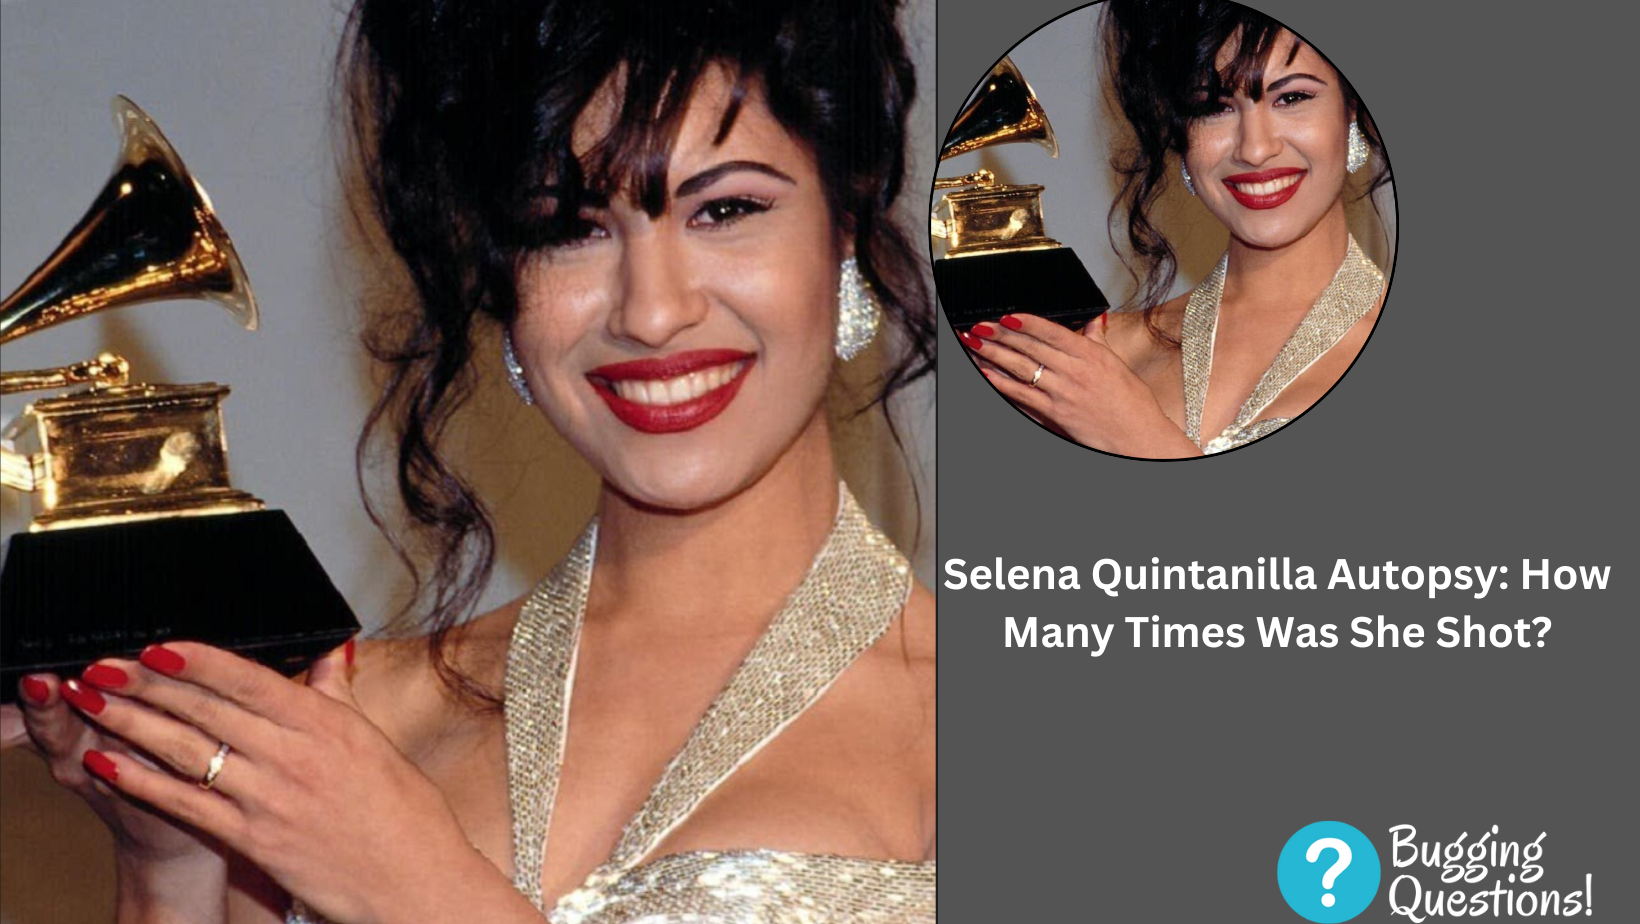 Selena Quintanilla Autopsy: How Many Times Was She Shot?